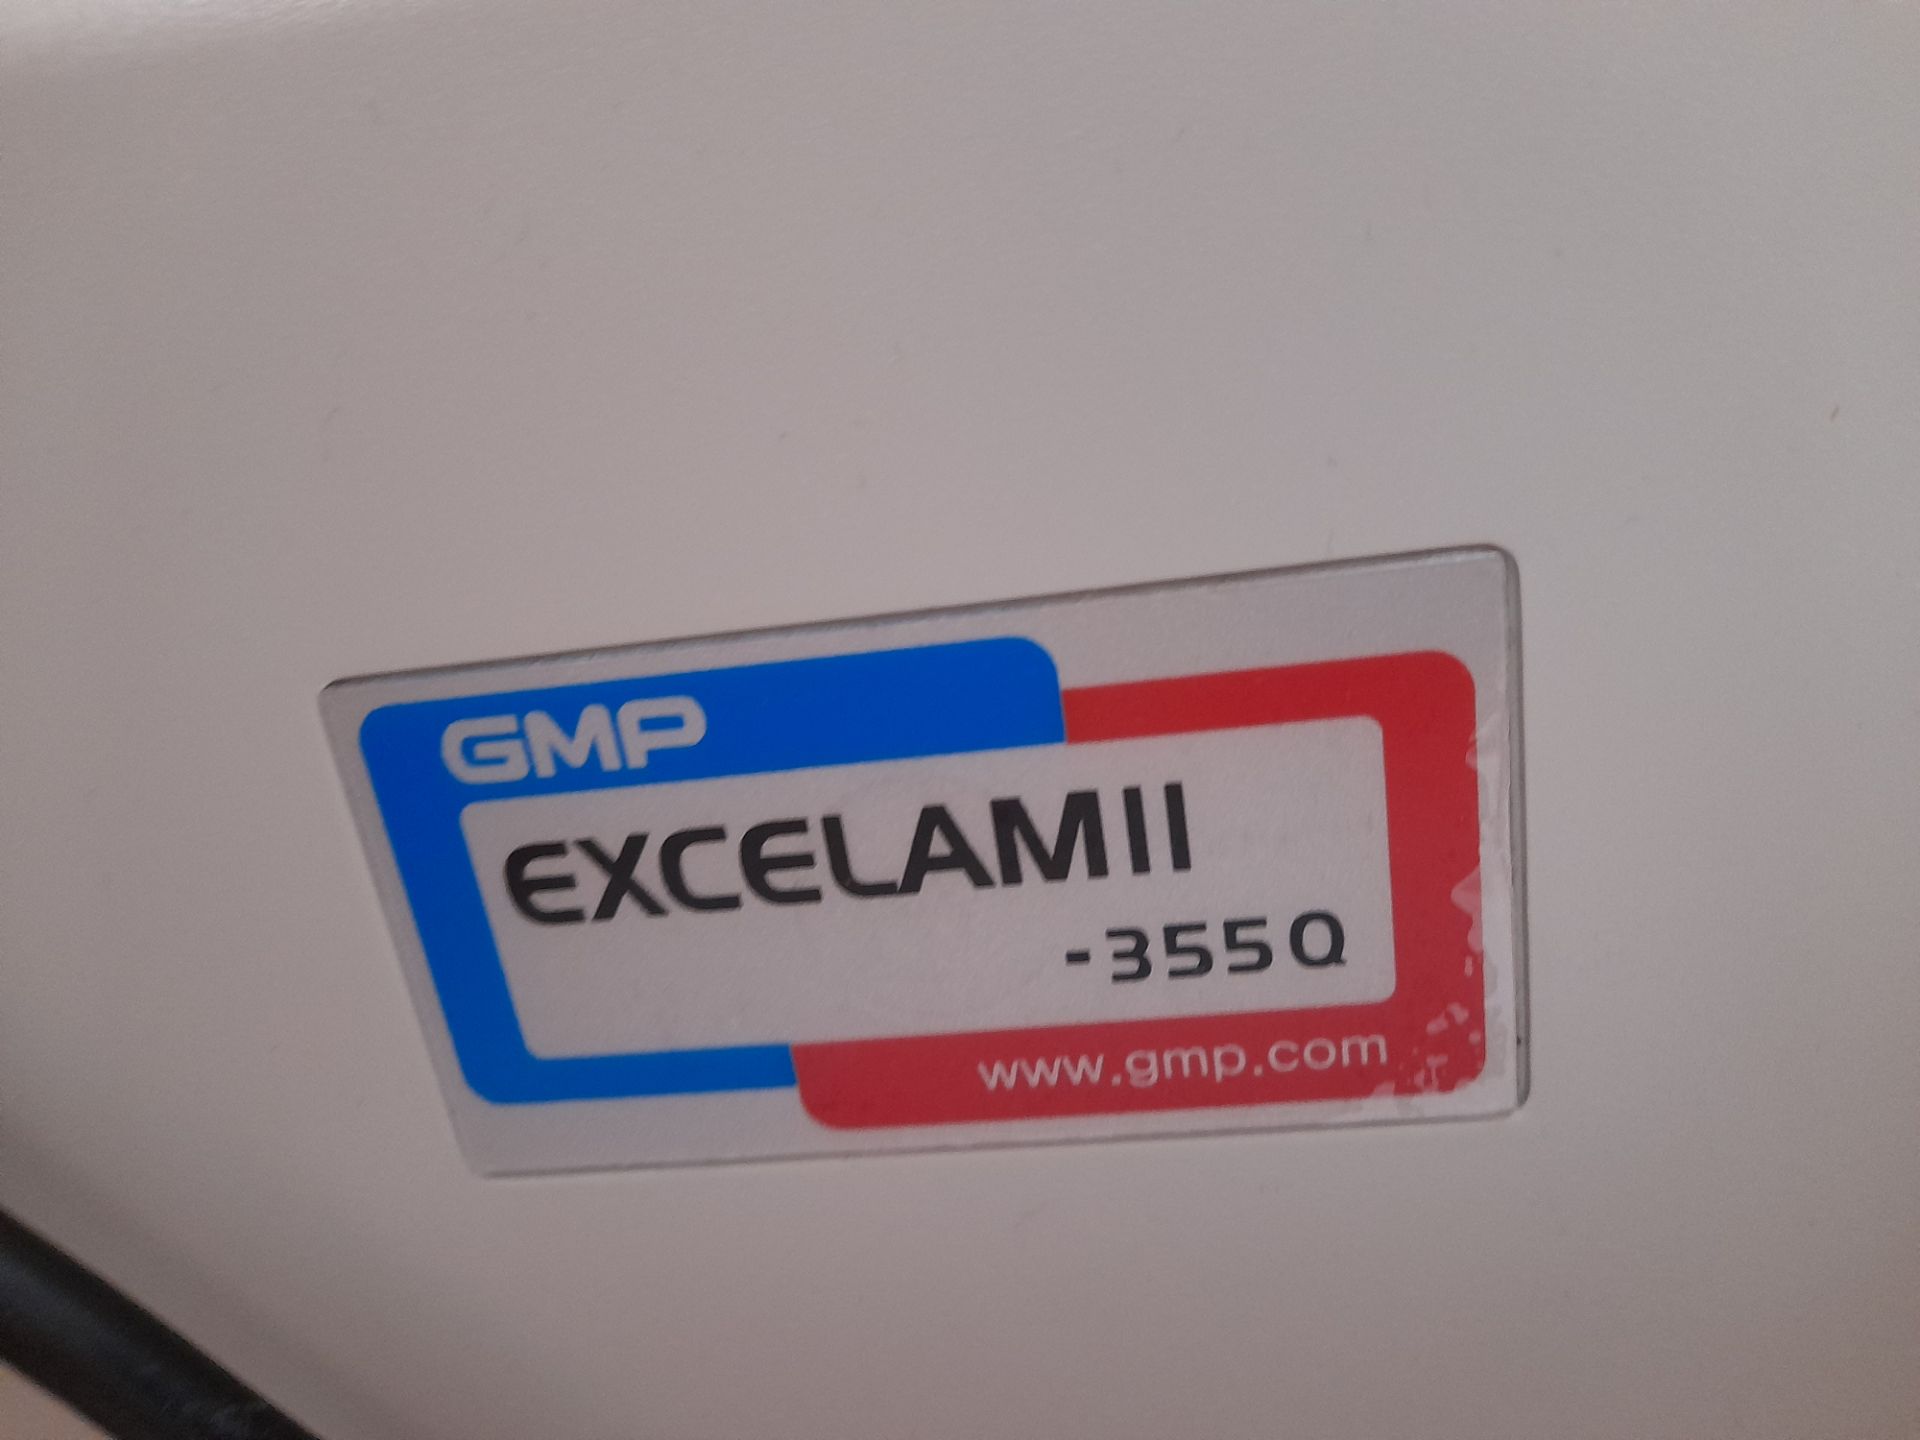 GMP Excelam Mk II - 355 Q laminator, max. laminating width 350mm, Serial Number EG 00105K, 240V - Image 4 of 5